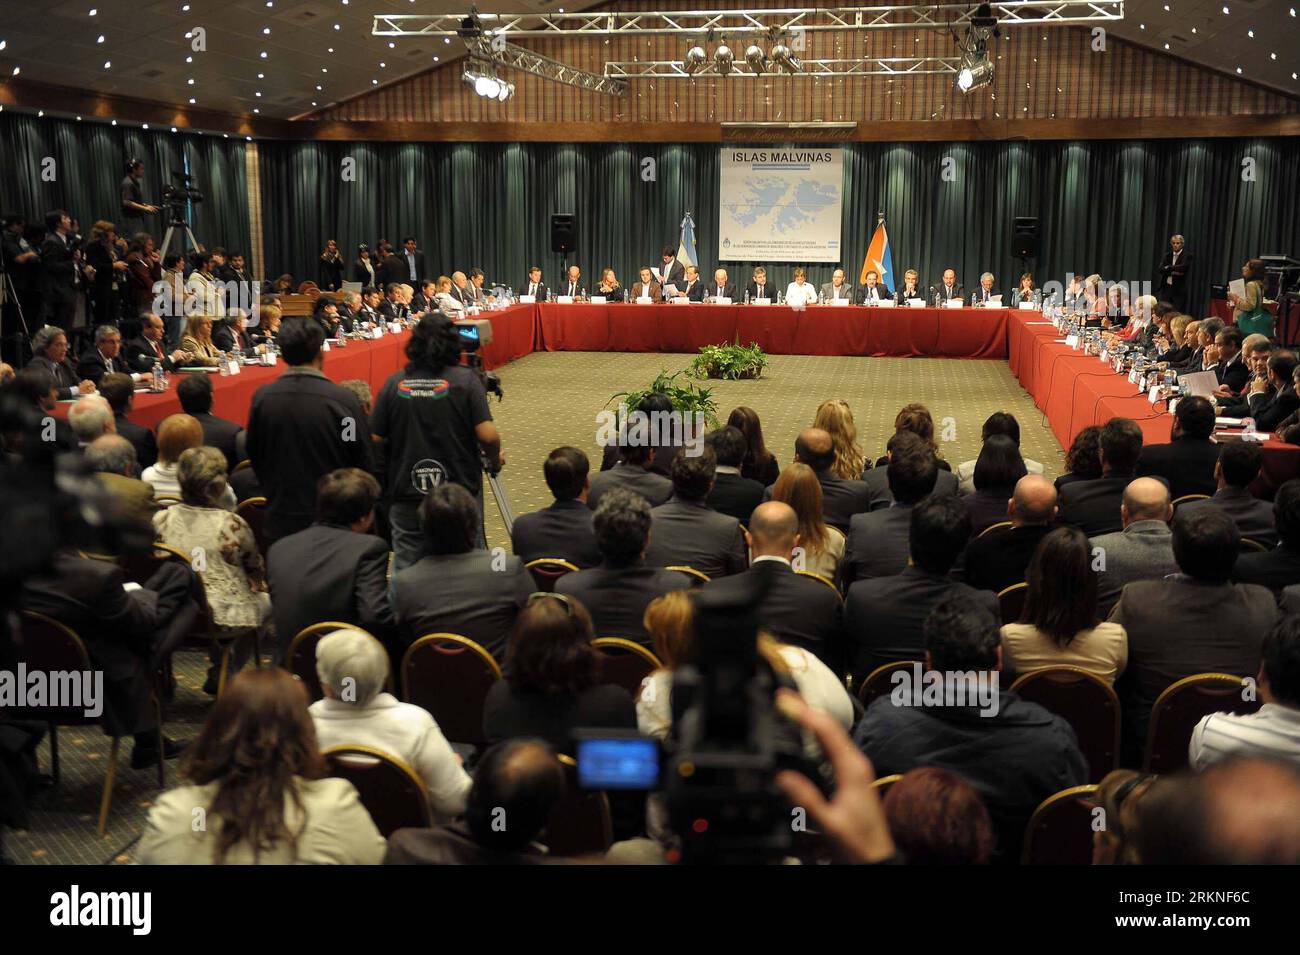 Bildnummer : 57109476 Datum : 25.02.2012 Copyright : imago/Xinhua (120226) -- USHUAIA, 26 février 2012 (Xinhua) -- les délégués assistent à la réunion à Ushuaia, la ville la plus méridionale de l'Argentine, le 25 février 2012. Samedi, les législateurs argentins ont réaffirmé la souveraineté de leur pays sur les îles Malvinas, appelées Falkland par la Grande-Bretagne, et ont appelé à une solution pacifique au différend. Cette position a été annoncée dans une déclaration signée par les représentants de tous les partis du Congrès national argentin lors d ' une réunion spéciale des législateurs chargés des relations extérieures. (Xinhua/Telam) (jl) ARGEN Banque D'Images